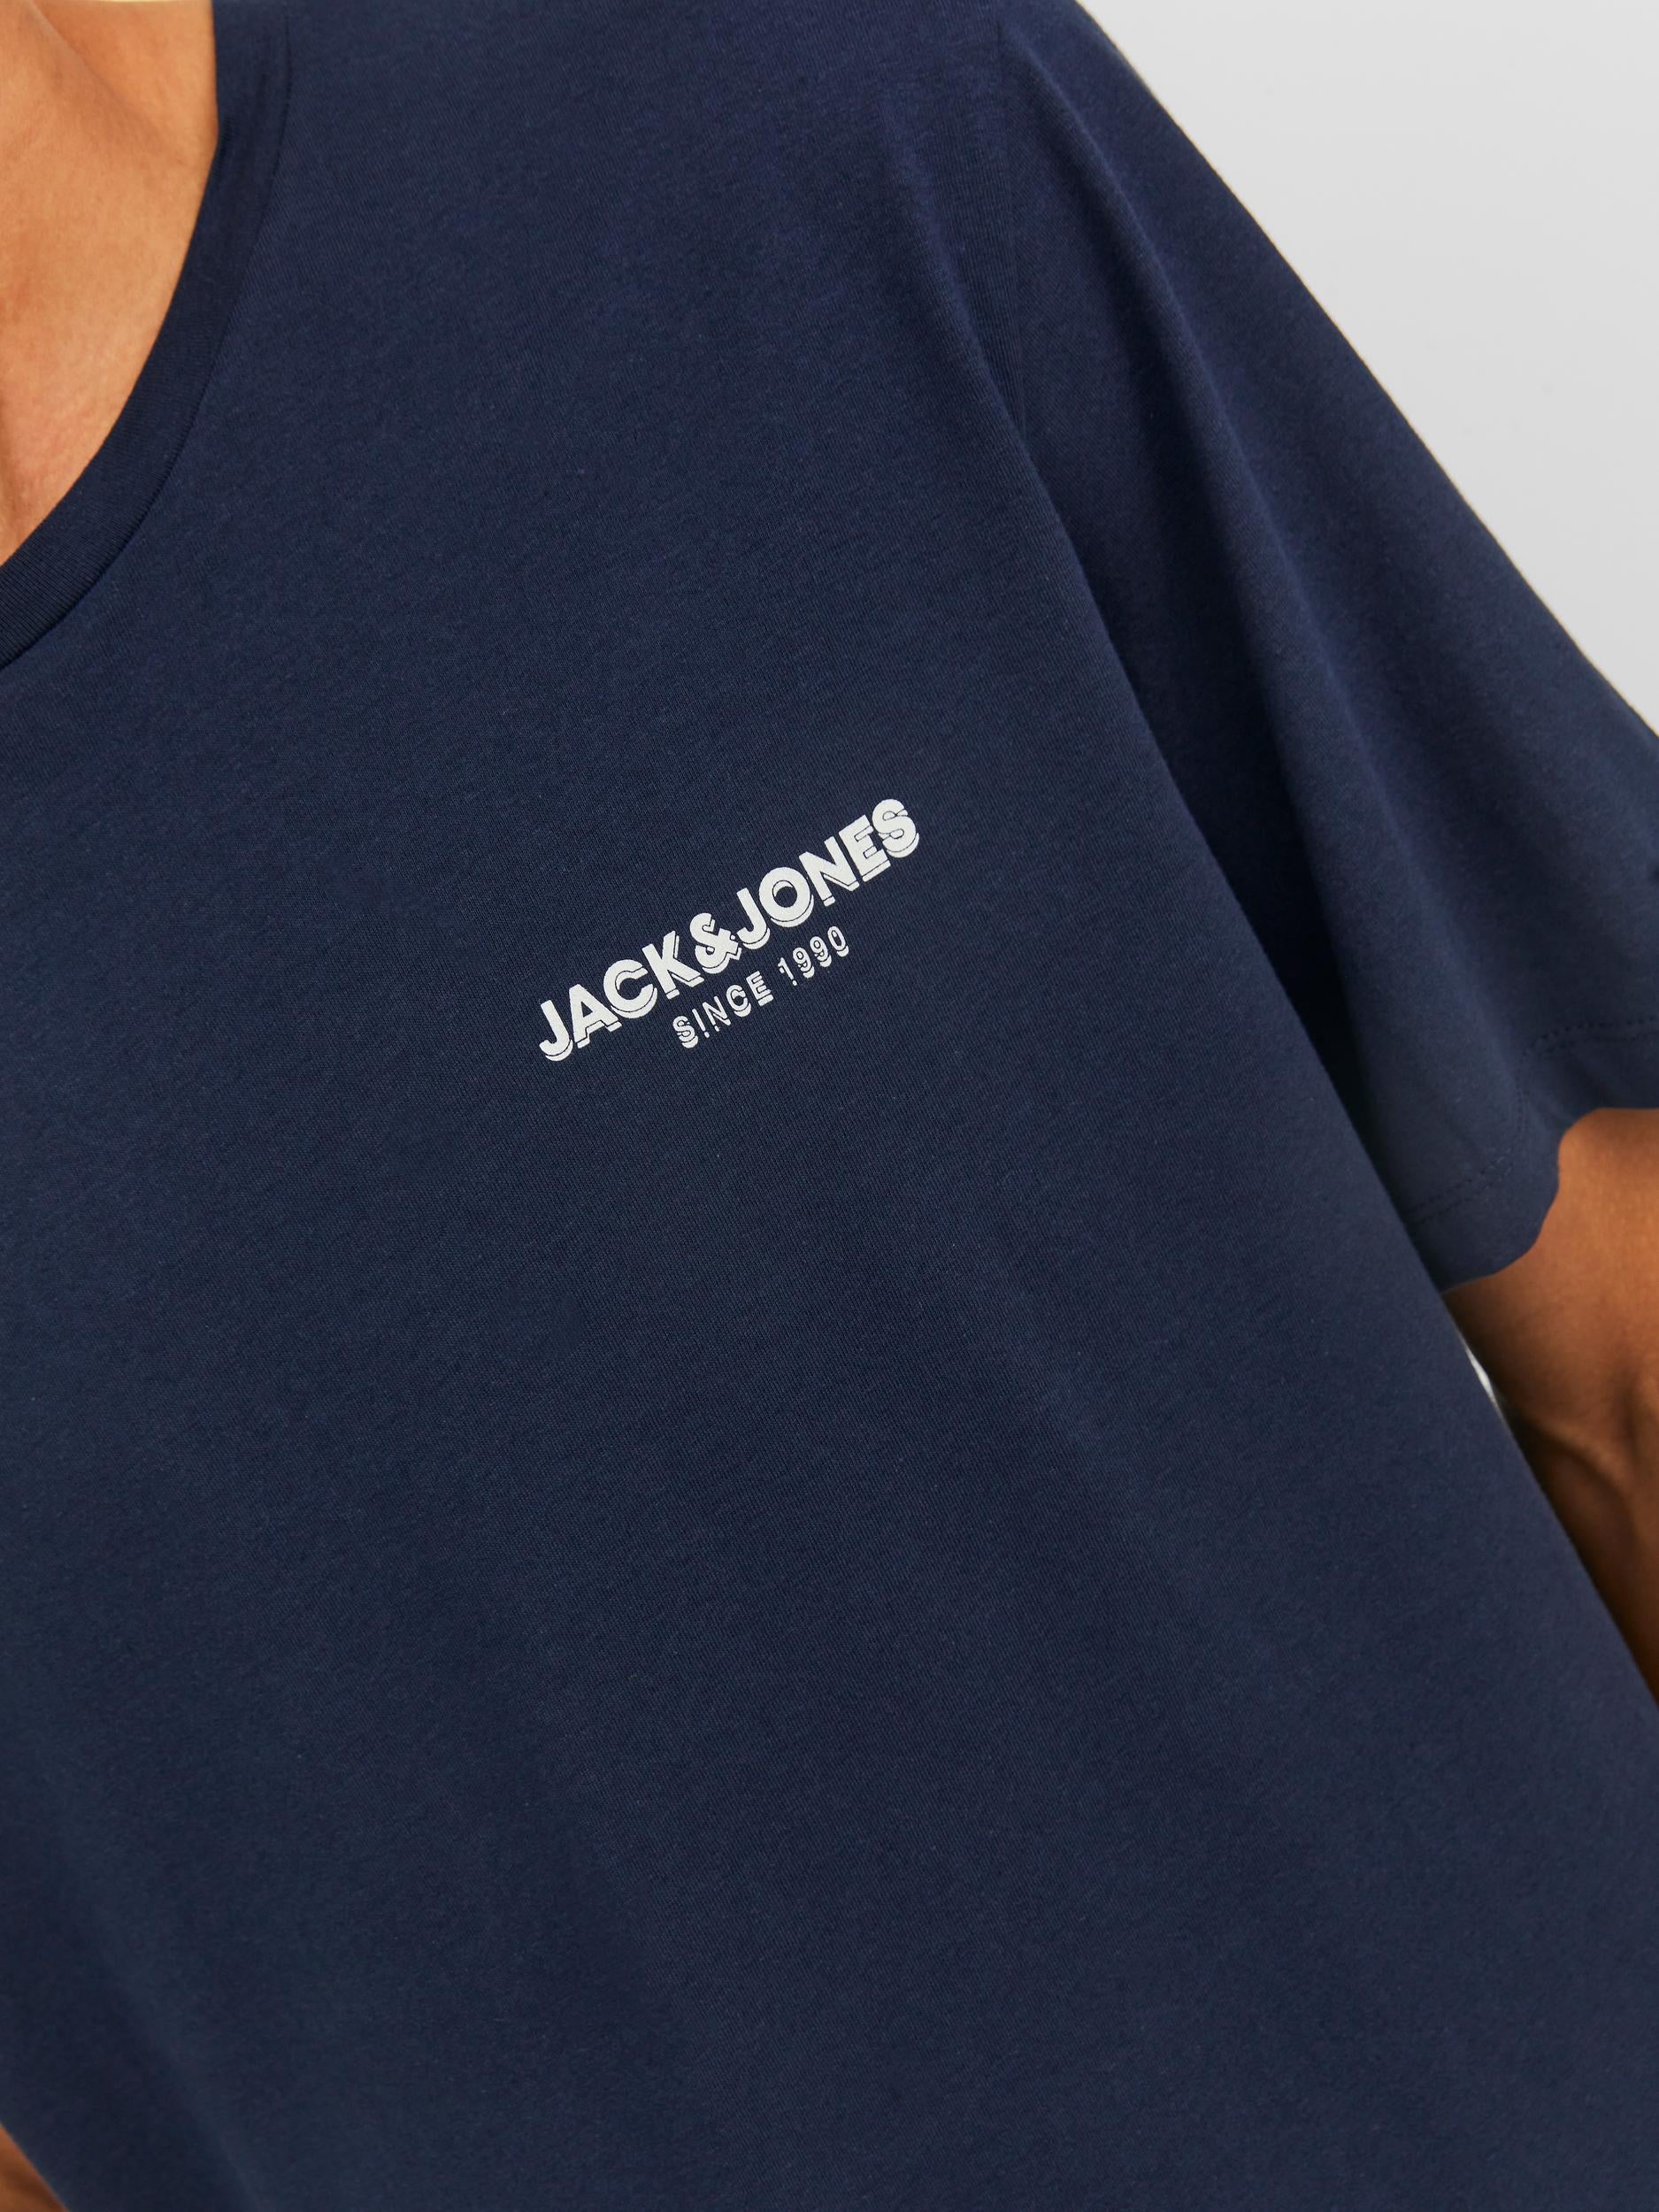 Jack & Jones Snorkle Tee Navy - Raw Menswear